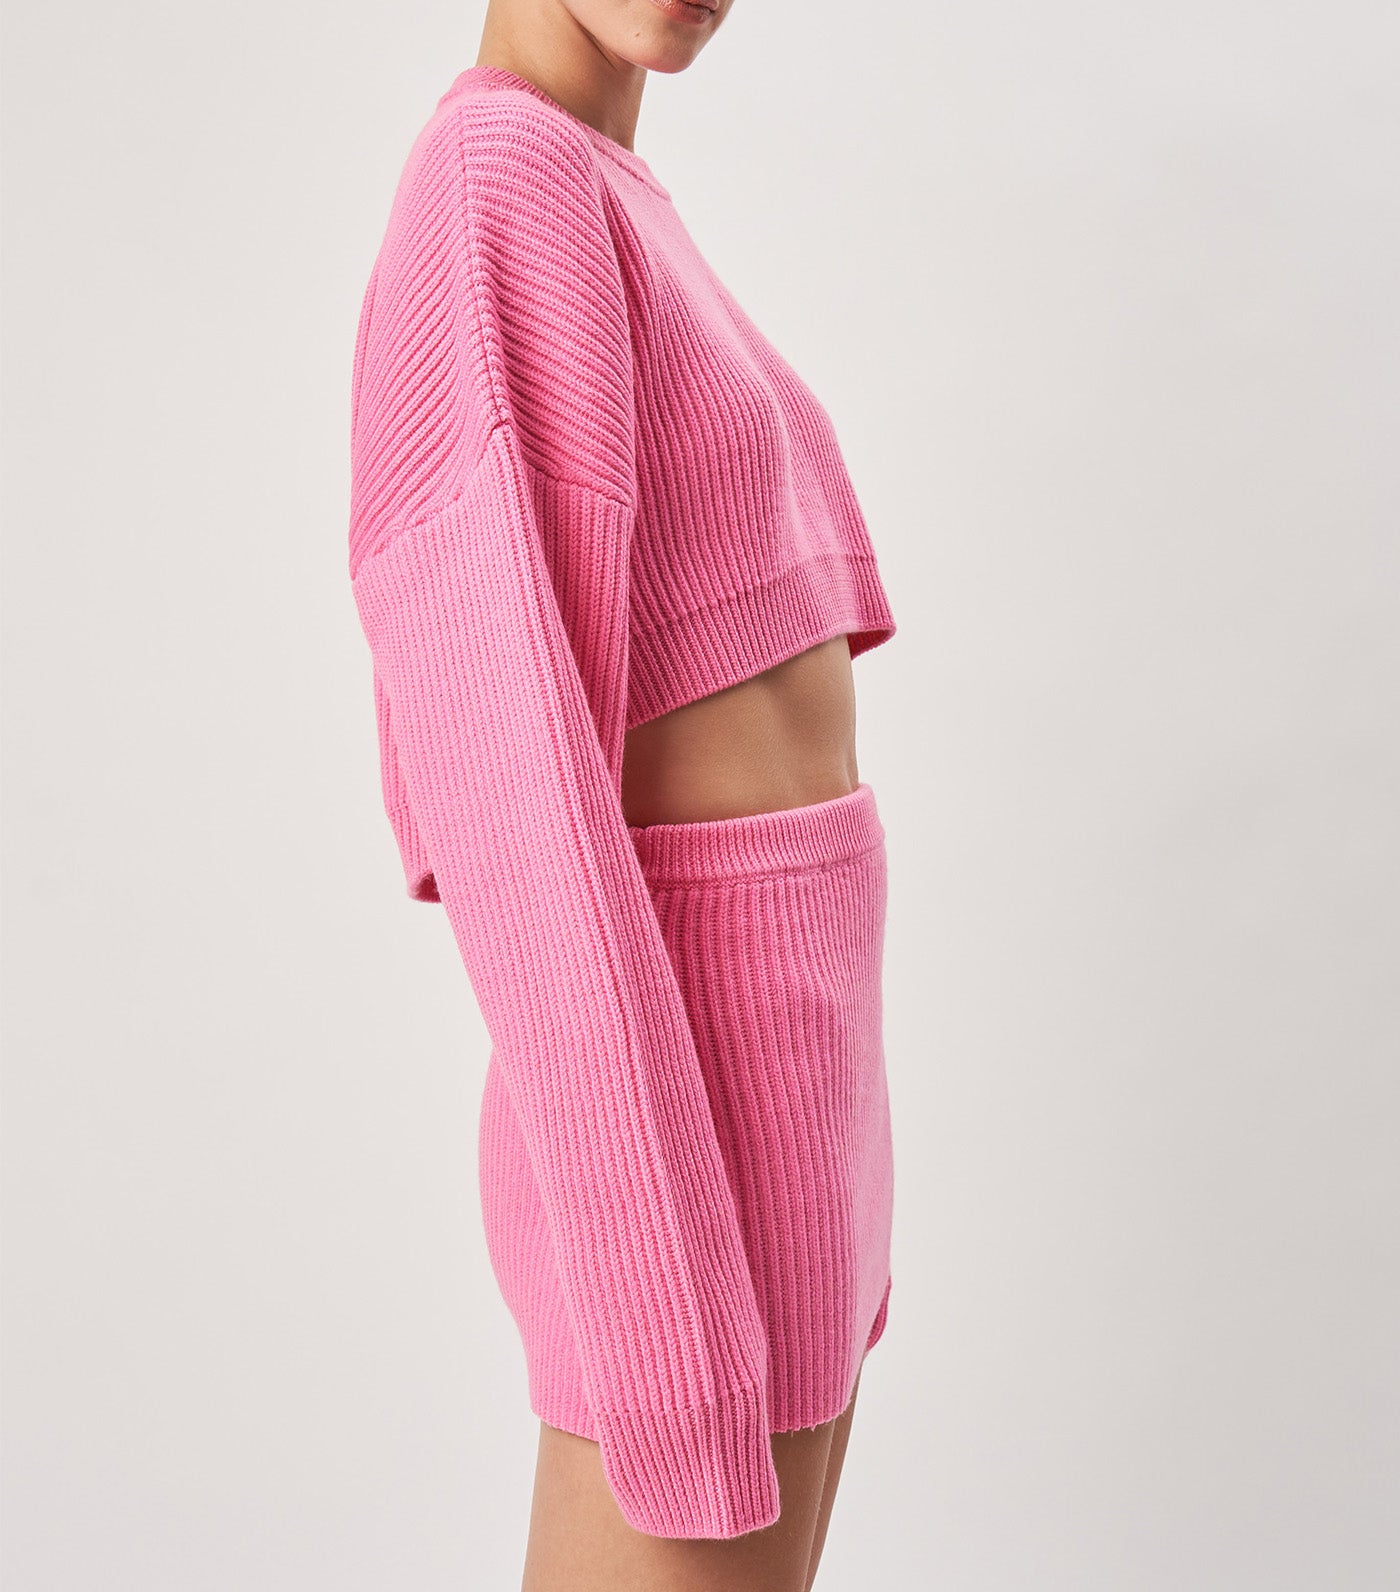 Violet Knit Top Hot Pink